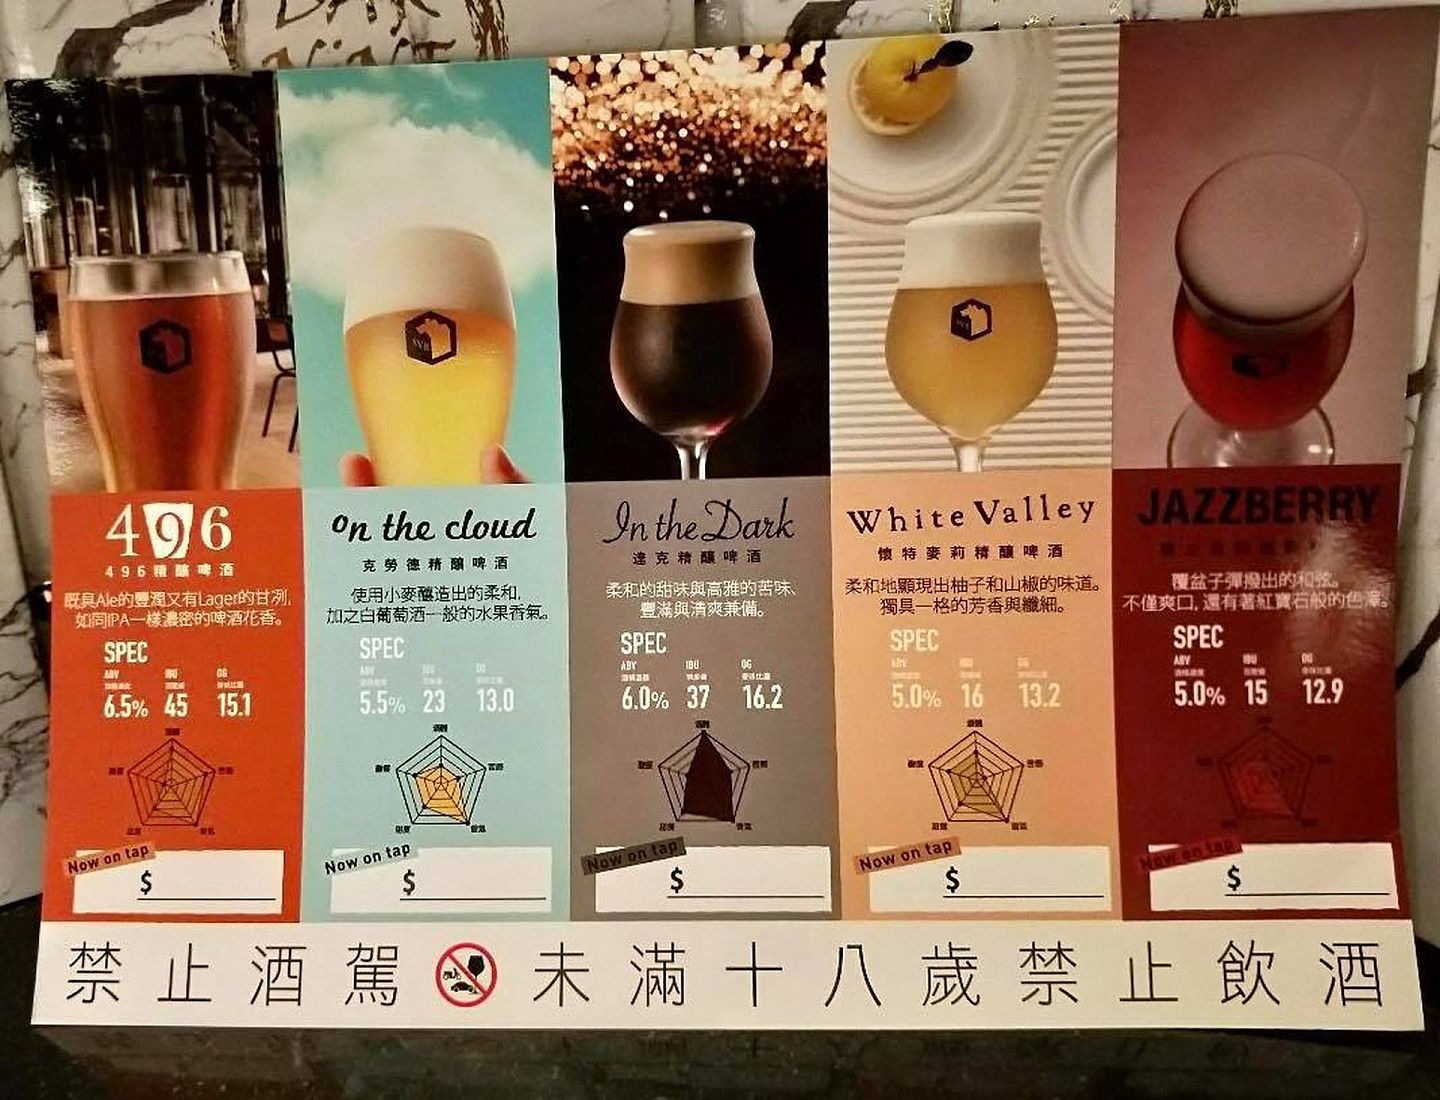 条通日式酒吧“Bar nine vip”内的各式酒种。（Facebook@Bar nine vip）